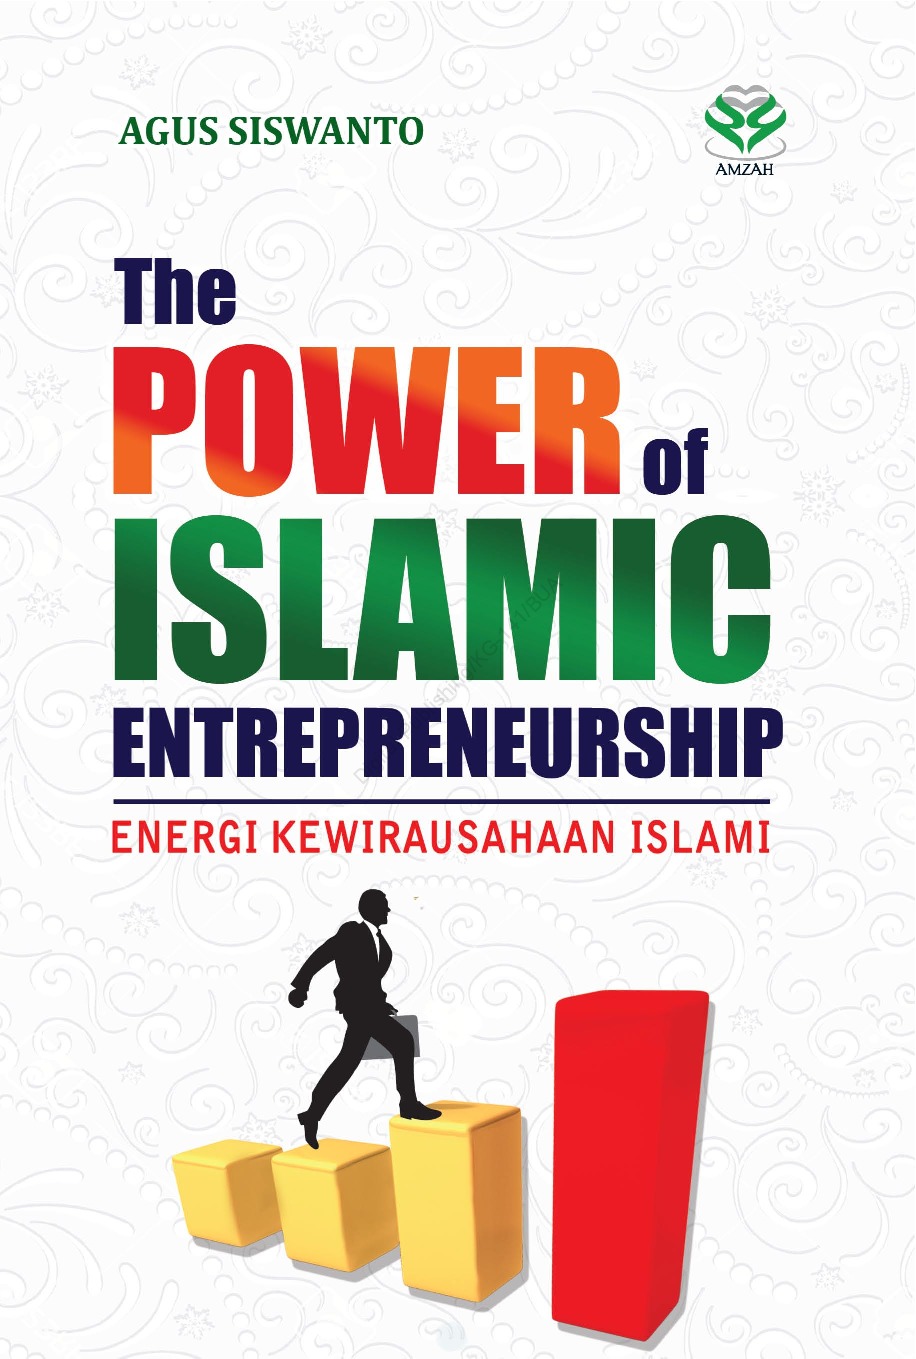 The power of islamic entrepreneurship